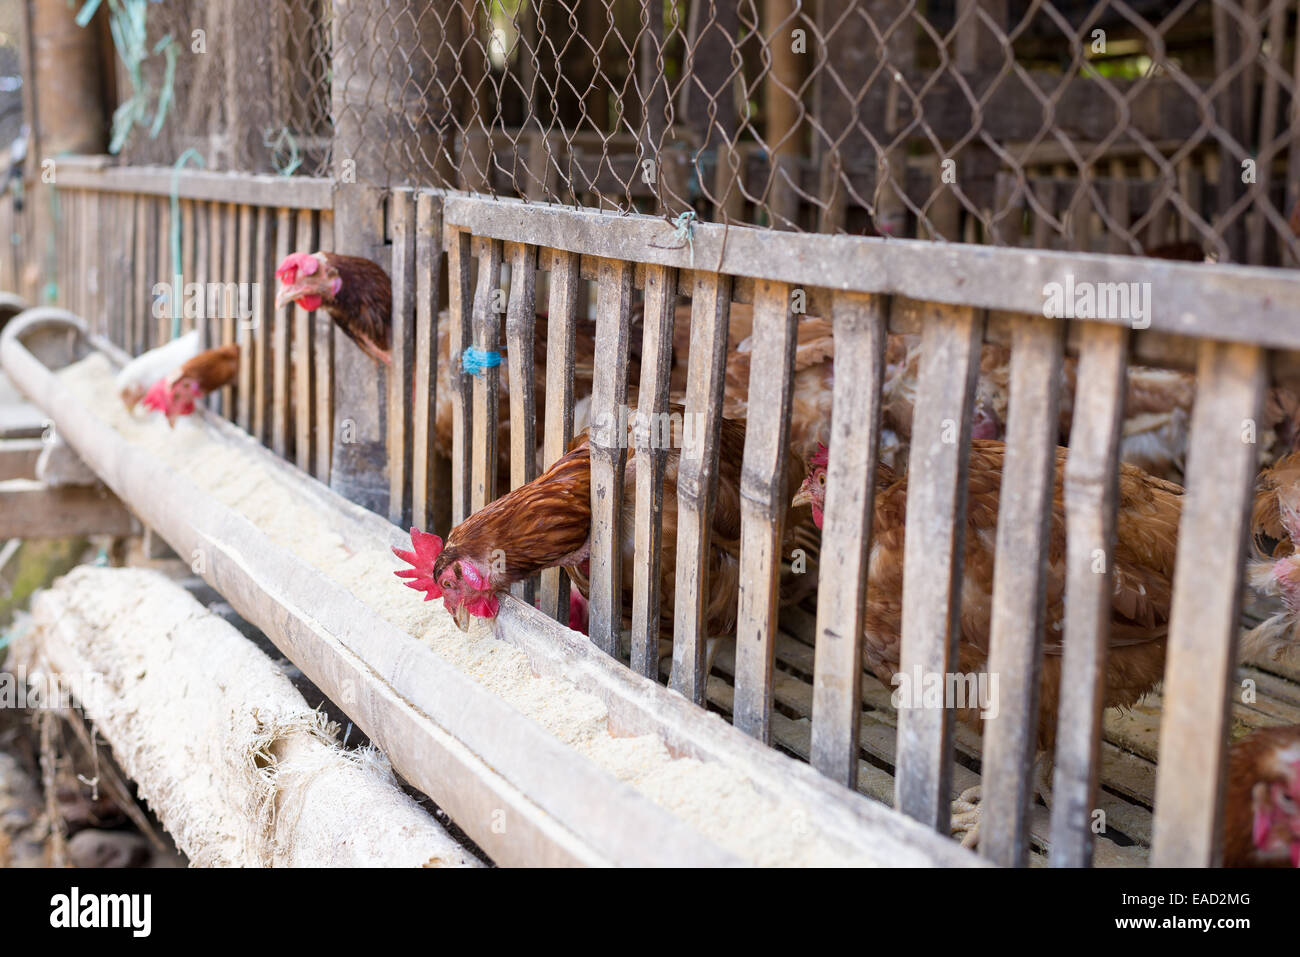 Alimentazione di pollo in gabbie in legno, mercato indonesiano. Messa a fuoco selettiva. Foto Stock